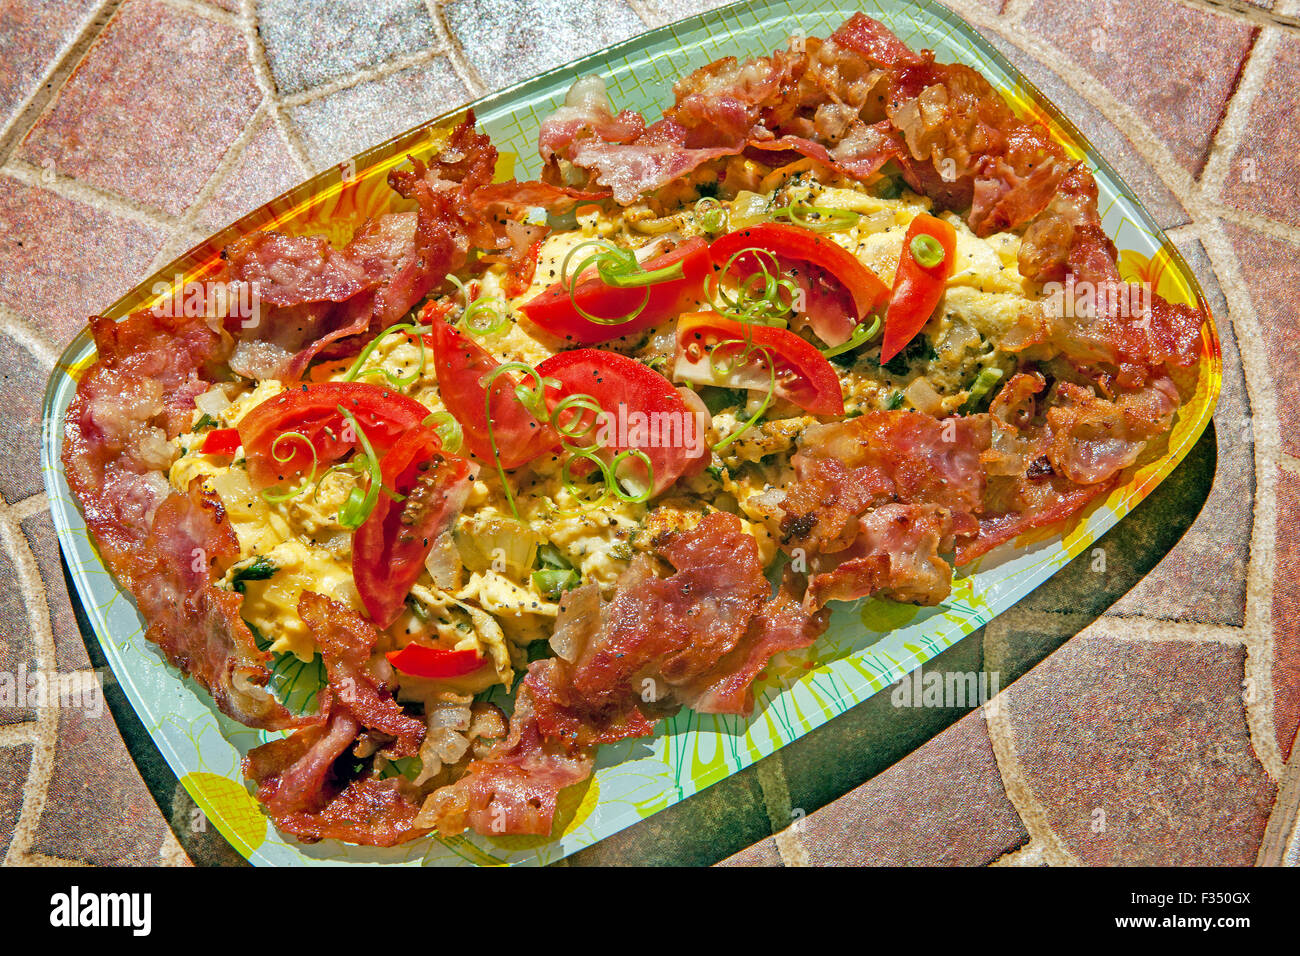 Eine Frühstück-Ei-Omelette mit Käse, Zwiebeln, Paprika, Frühlingszwiebeln Streifen, Tomaten Keile und fettig, gebratenen Speck. Stockfoto